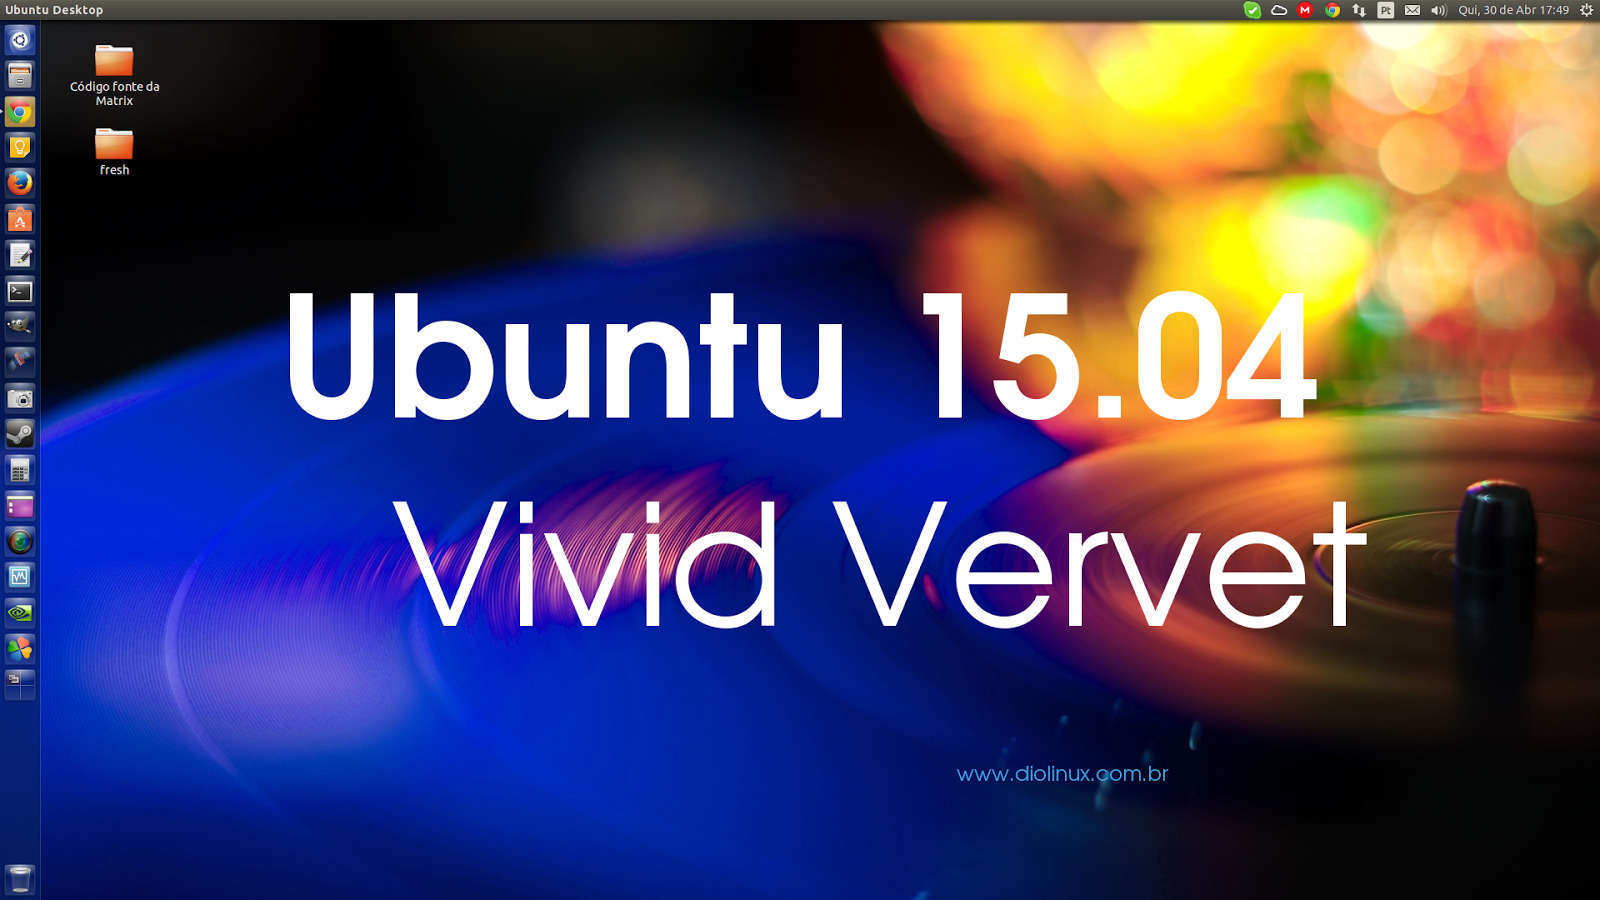 Análise completa do no Ubuntu 15.04 Vivid Vervet